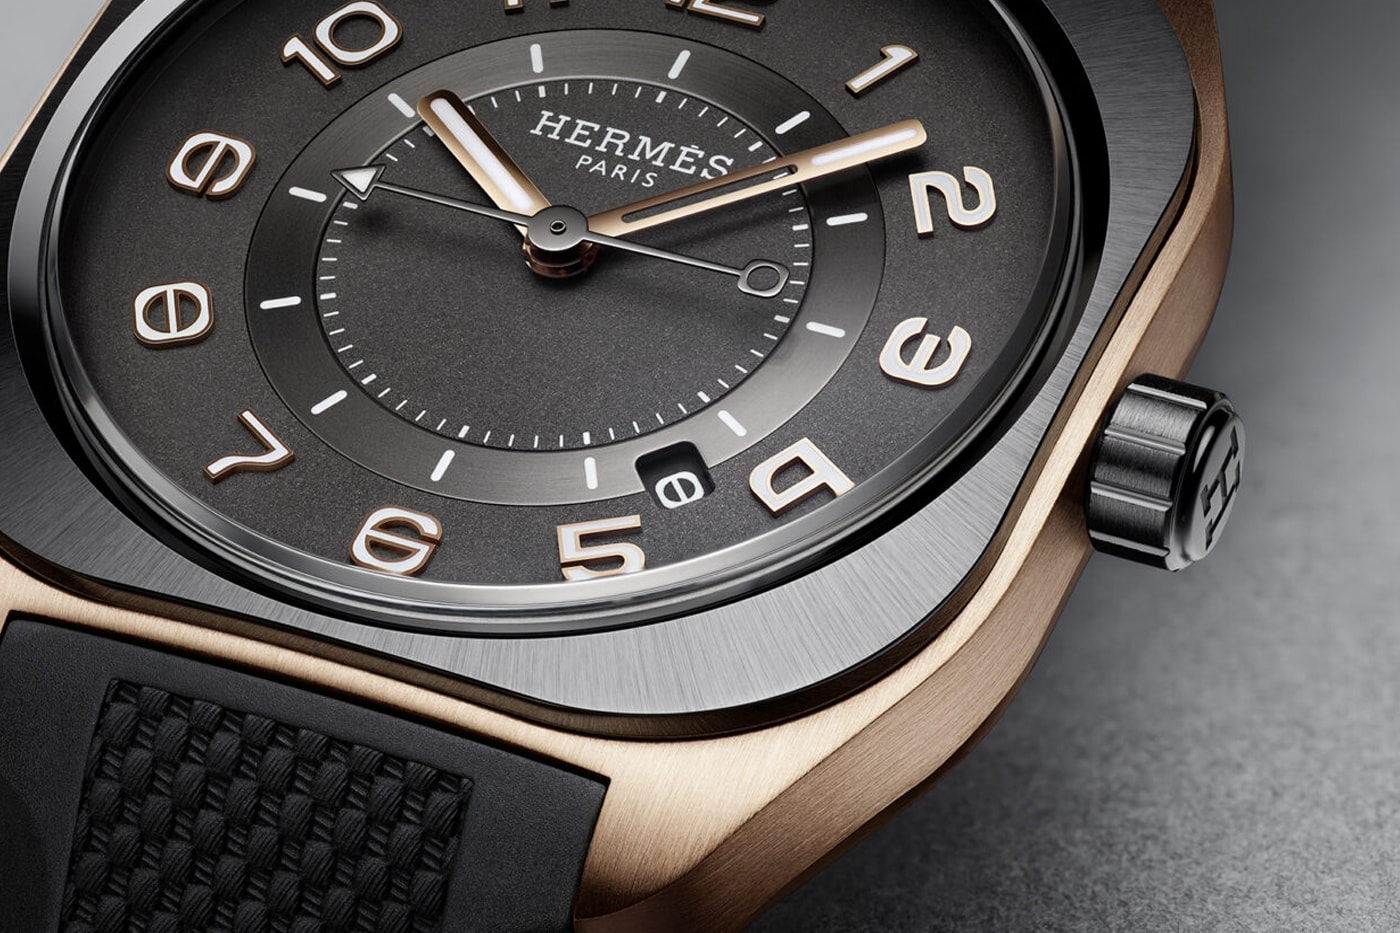 エルメス H08 シリーズからローズゴールドとチタンを組み合わせた新作ウォッチが登場 Hermès Reinterprets the H08 Watch in Rose Gold and Titanium Featuring a two-tone design that boasts urban sophistication and sporty appeal.